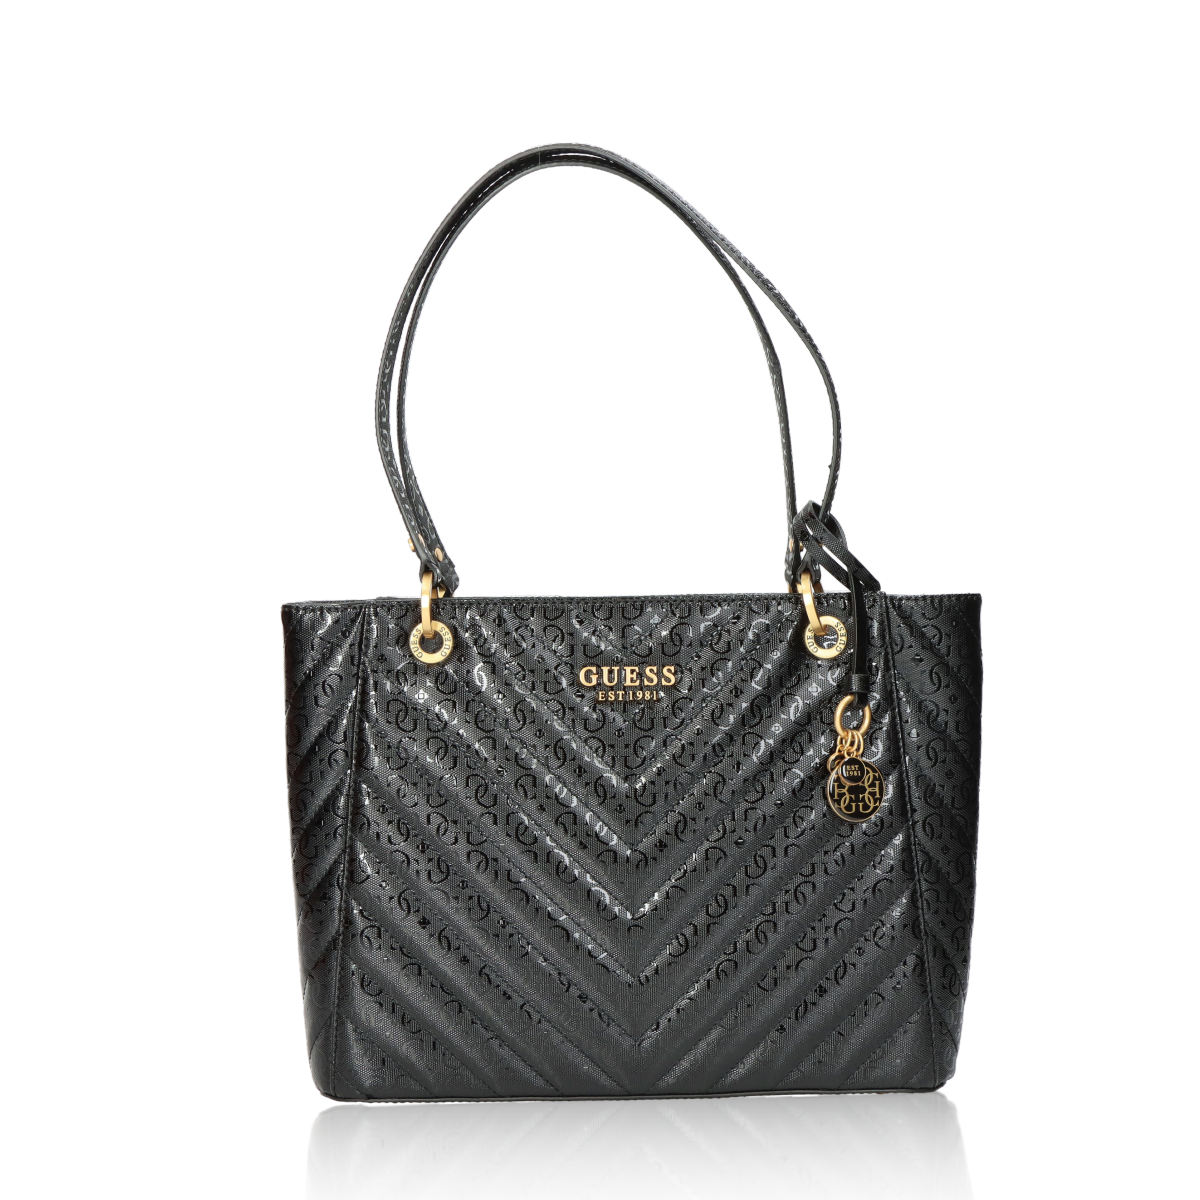 Guess dámská elegantní kabelka - černá - One size